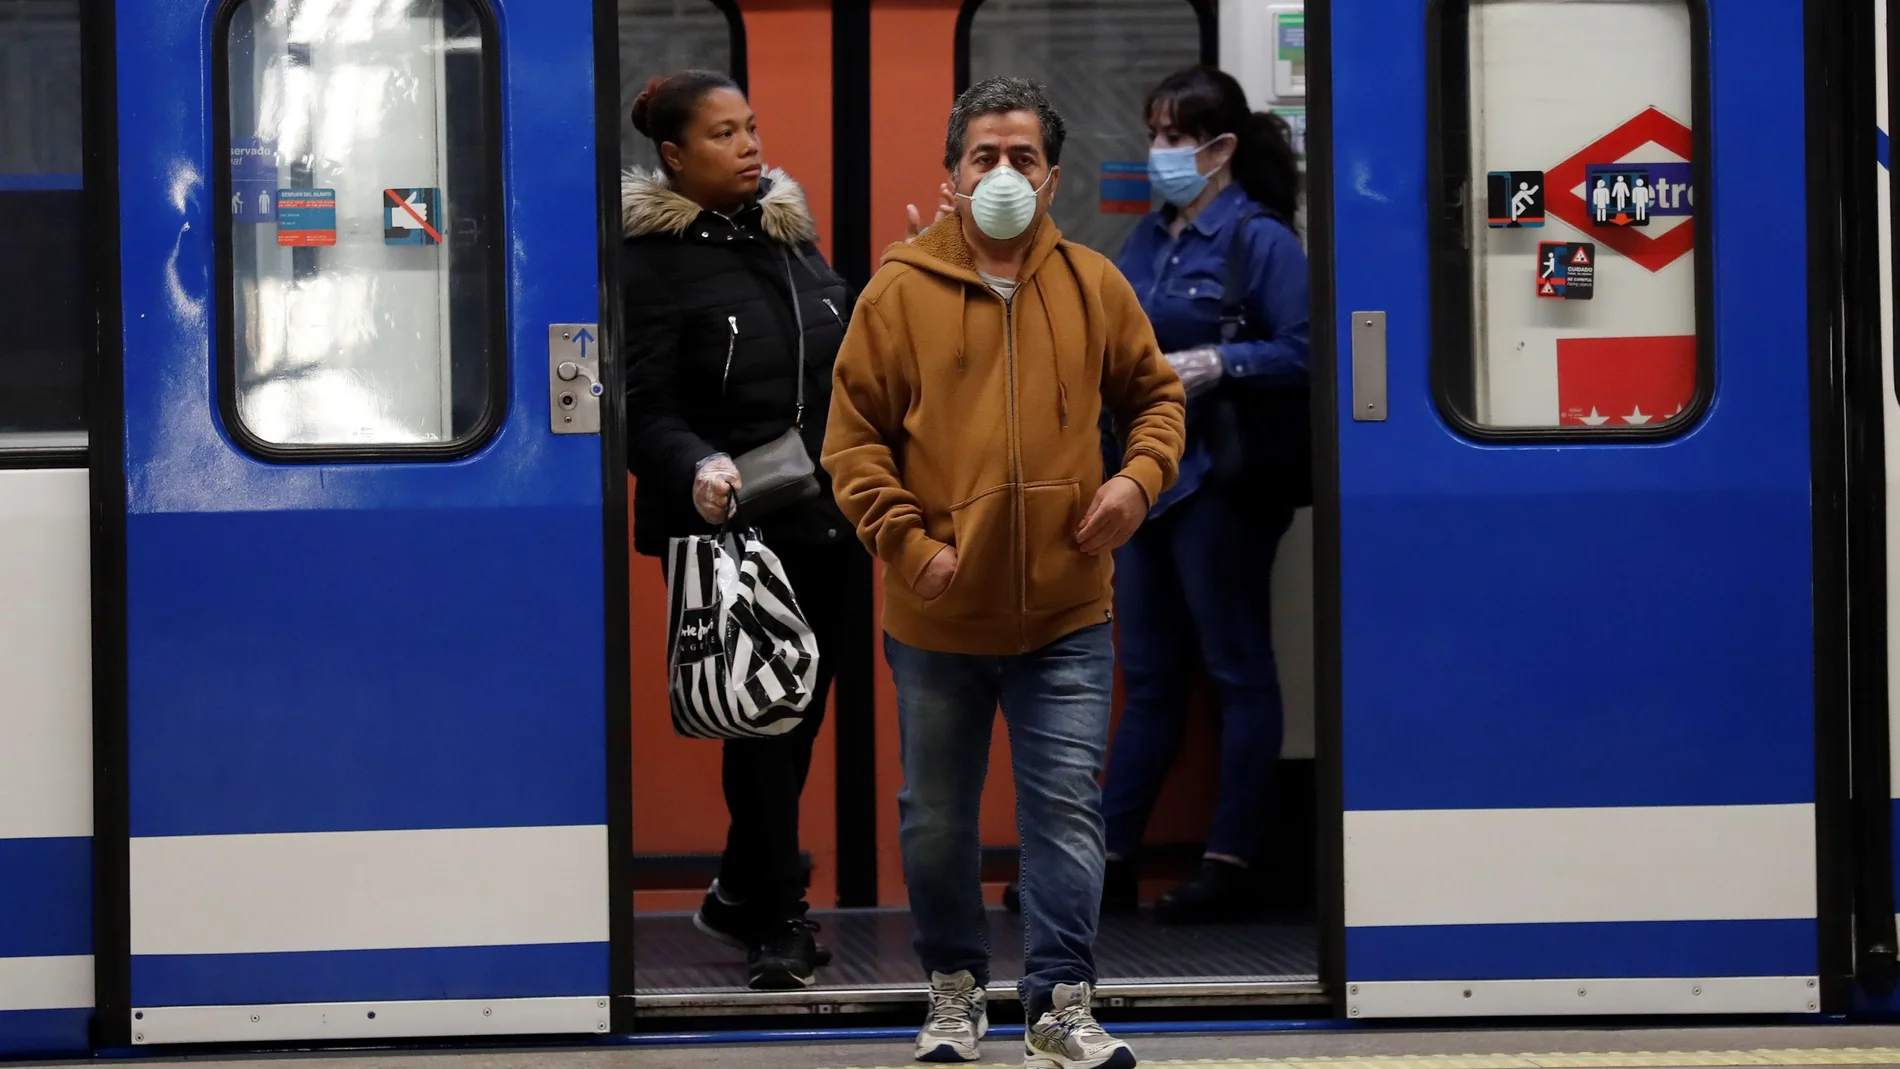 Viajeros con mascarilla saliendo de un vagón en la estación de Atocha